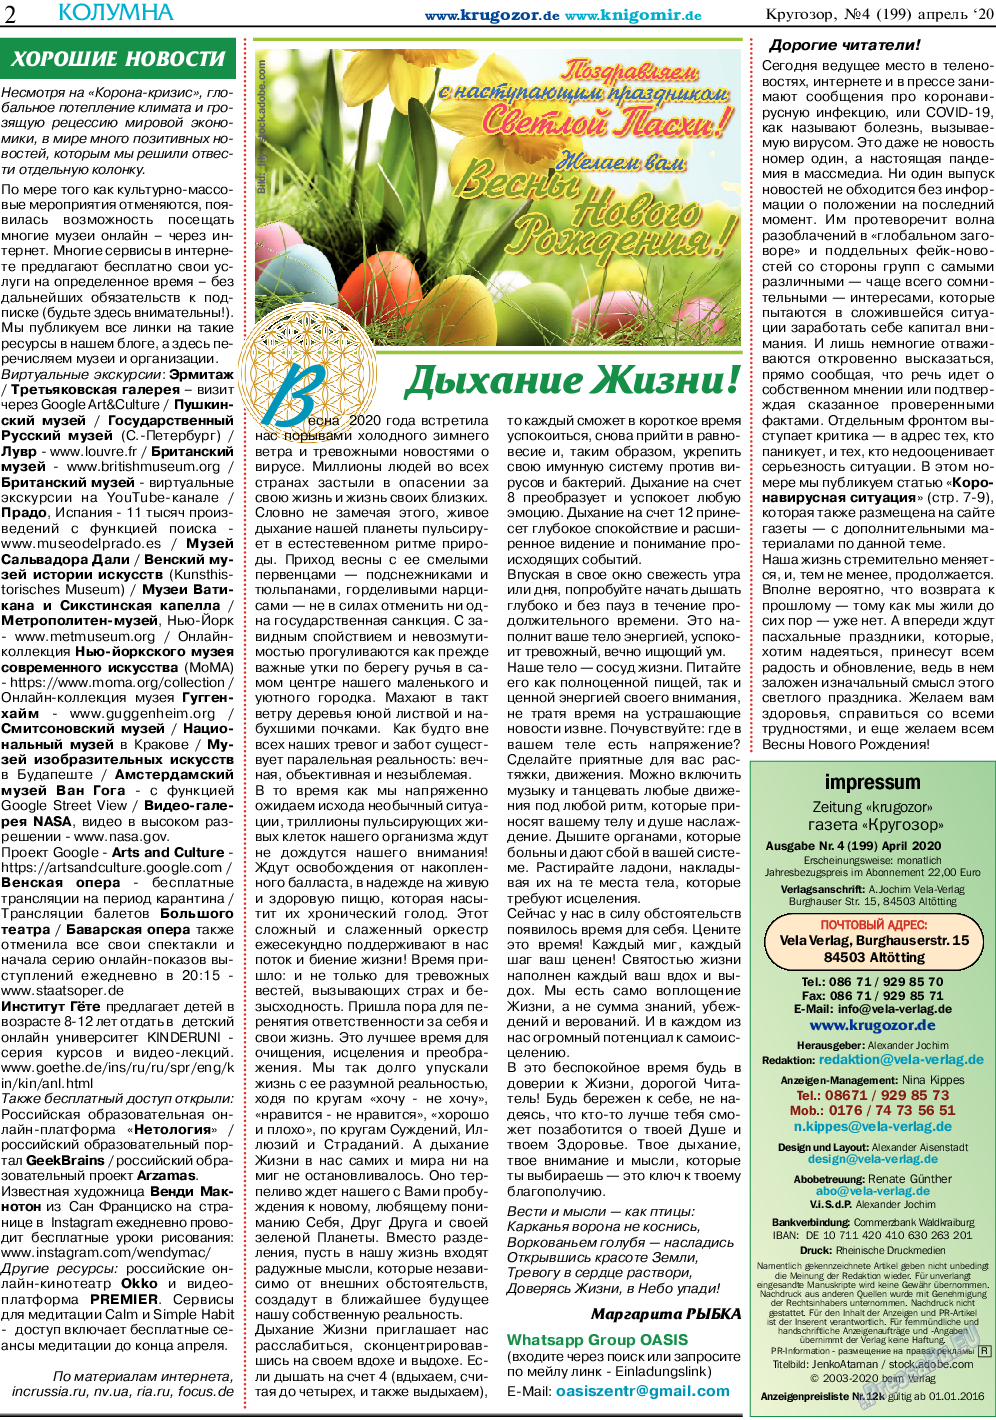 Кругозор, газета. 2020 №4 стр.2